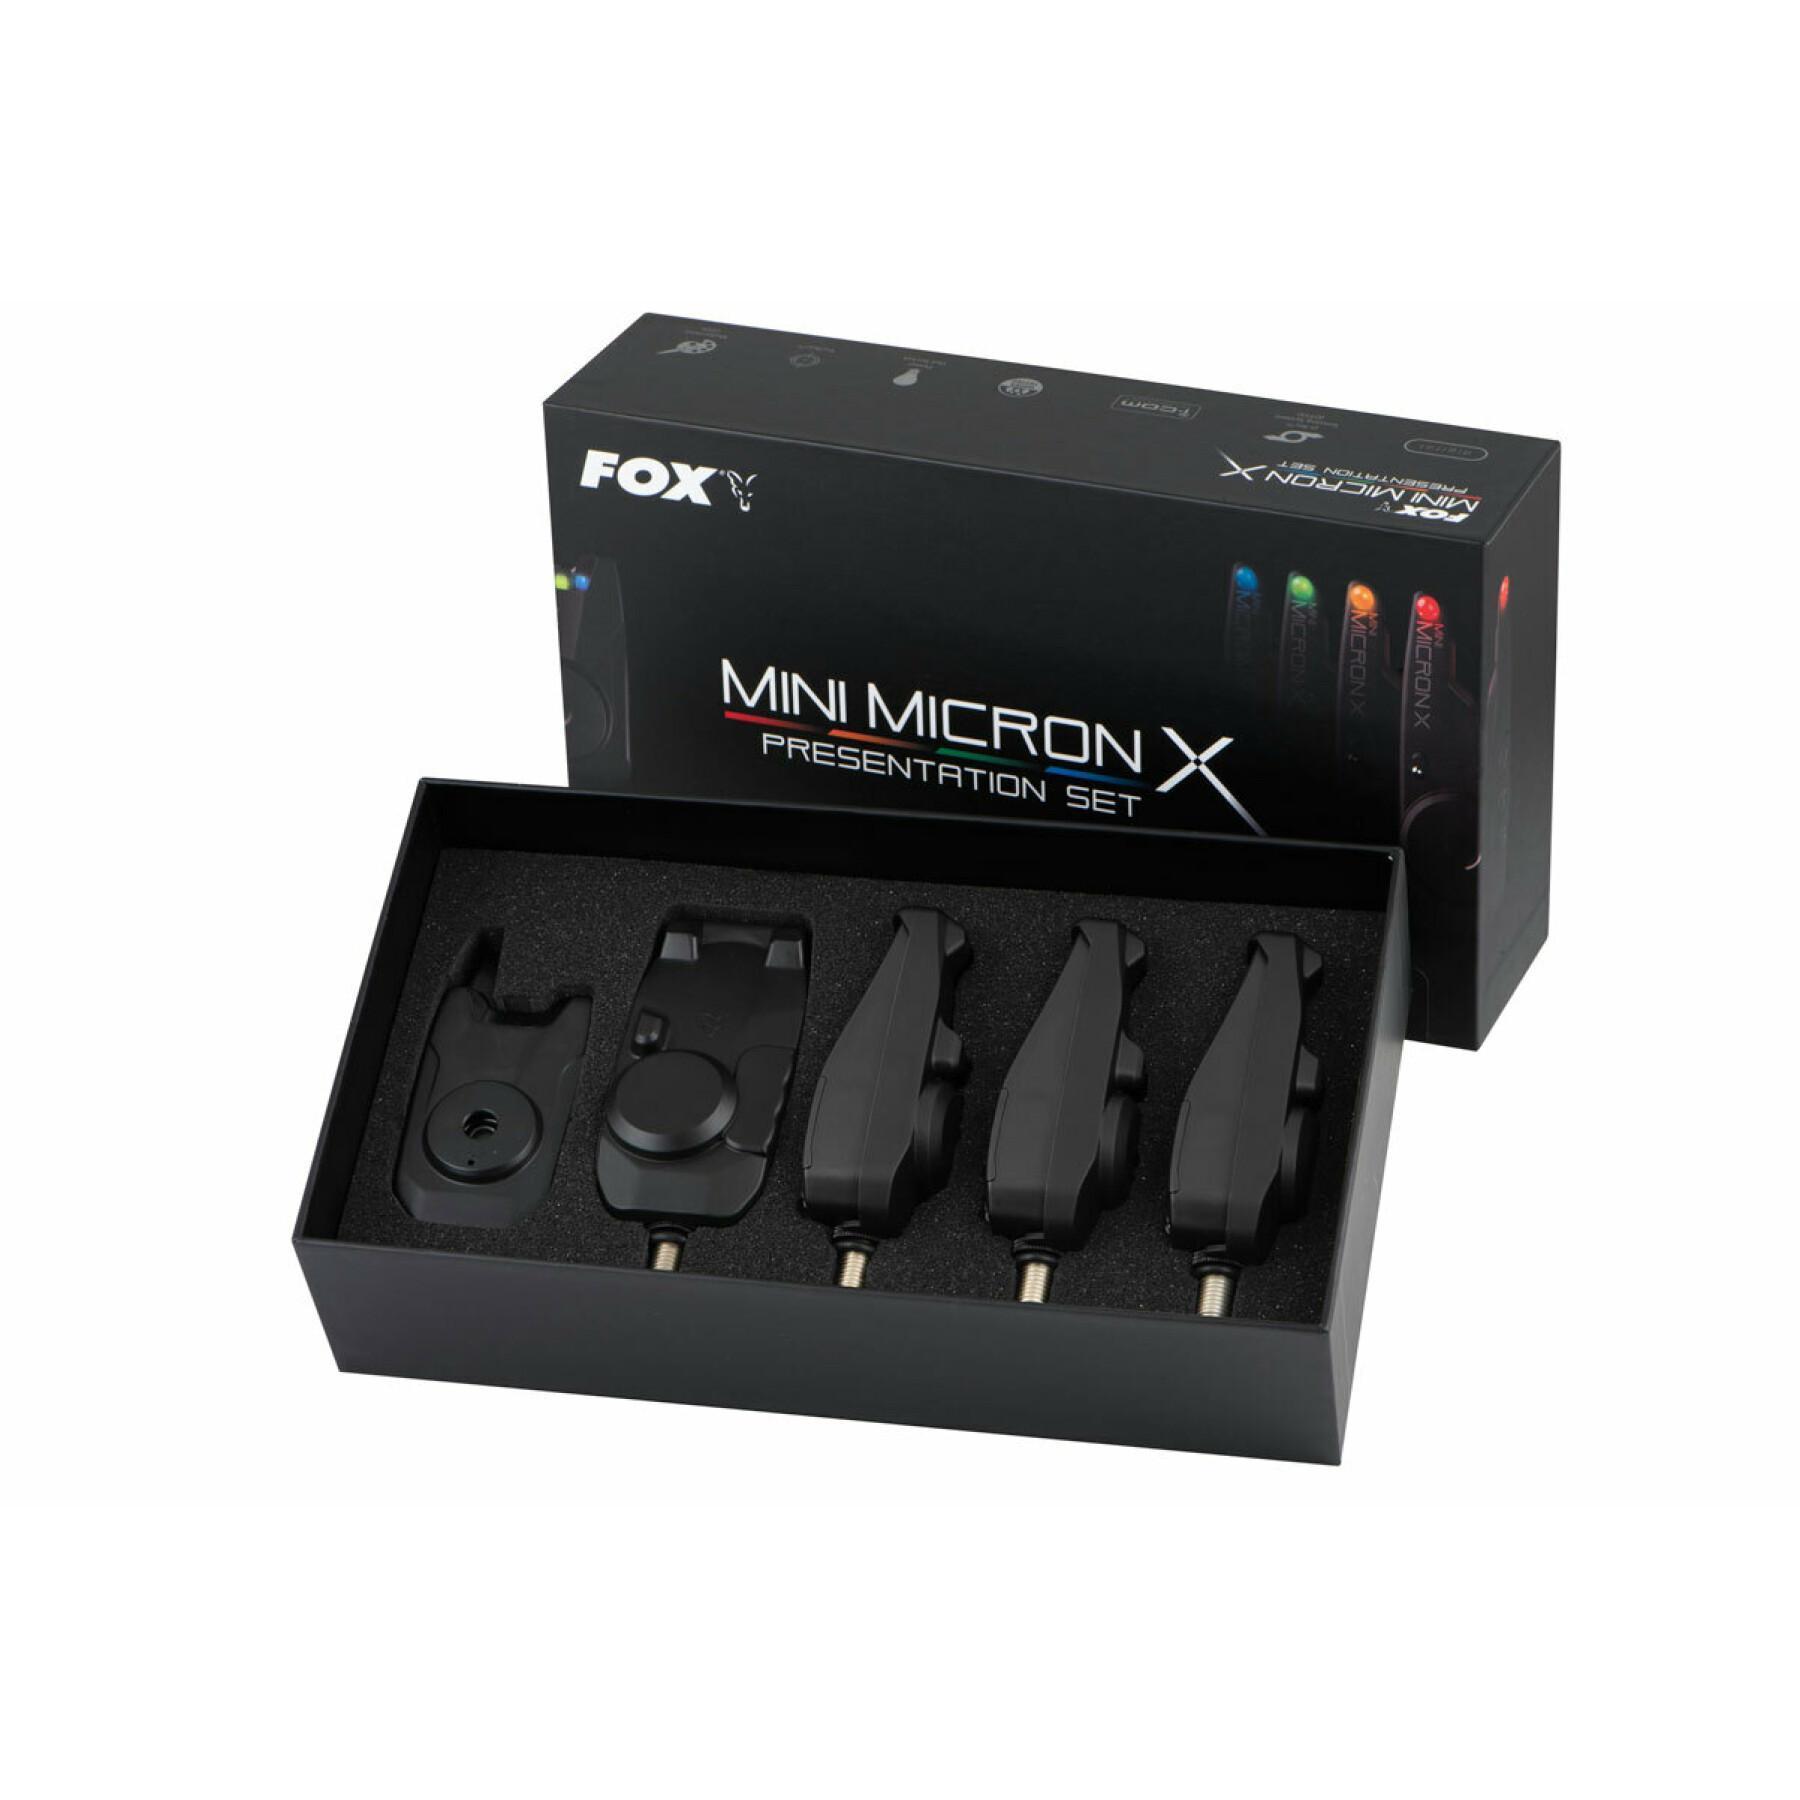 4 Detektoren Fox Mini micron X